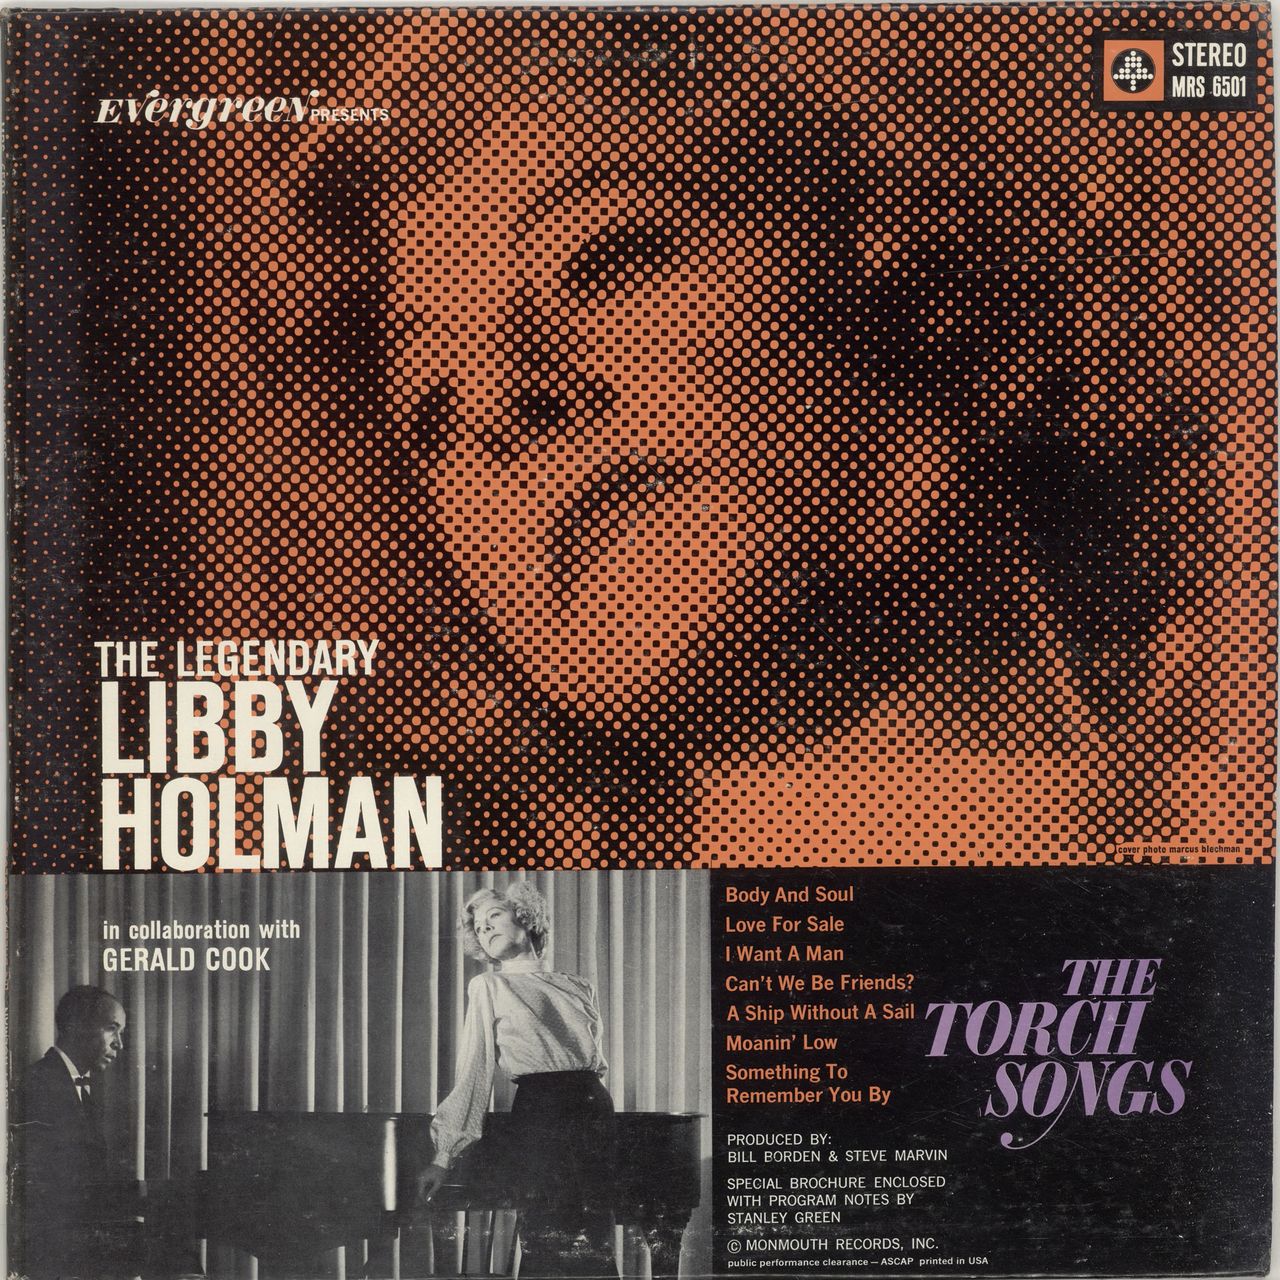 The　LP　Holman　—　US　Legendary　Libby　Libby　Holman　Vinyl